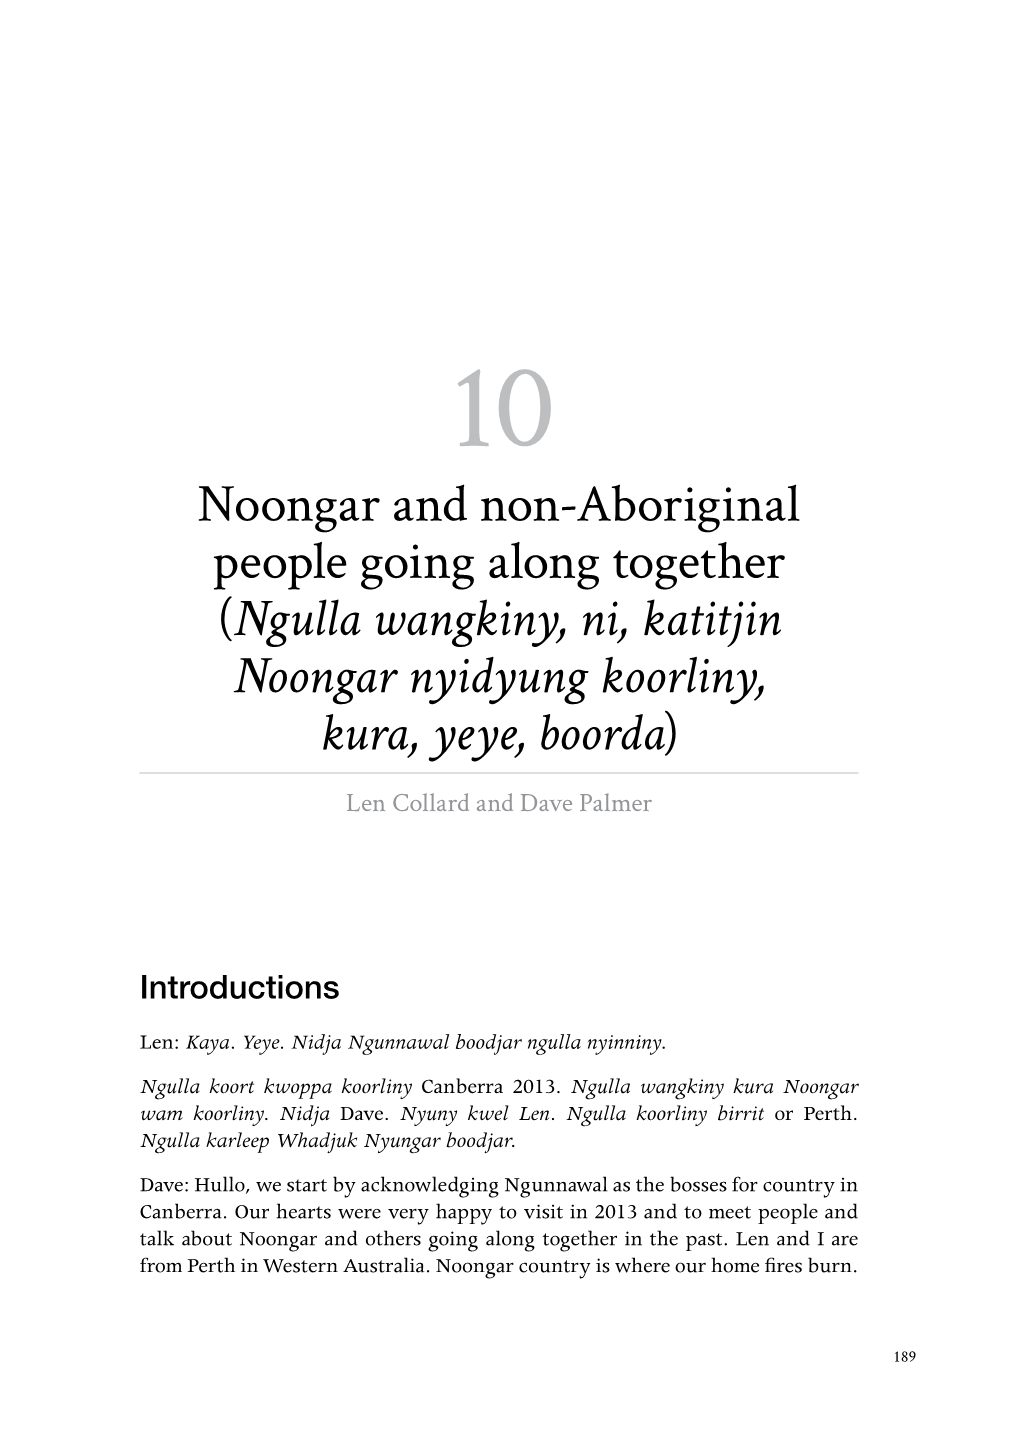 Noongar and Non-Aboriginal People Going Along Together (Ngulla Wangkiny, Ni, Katitjin Noongar Nyidyung Koorliny, Kura, Yeye, Boorda)